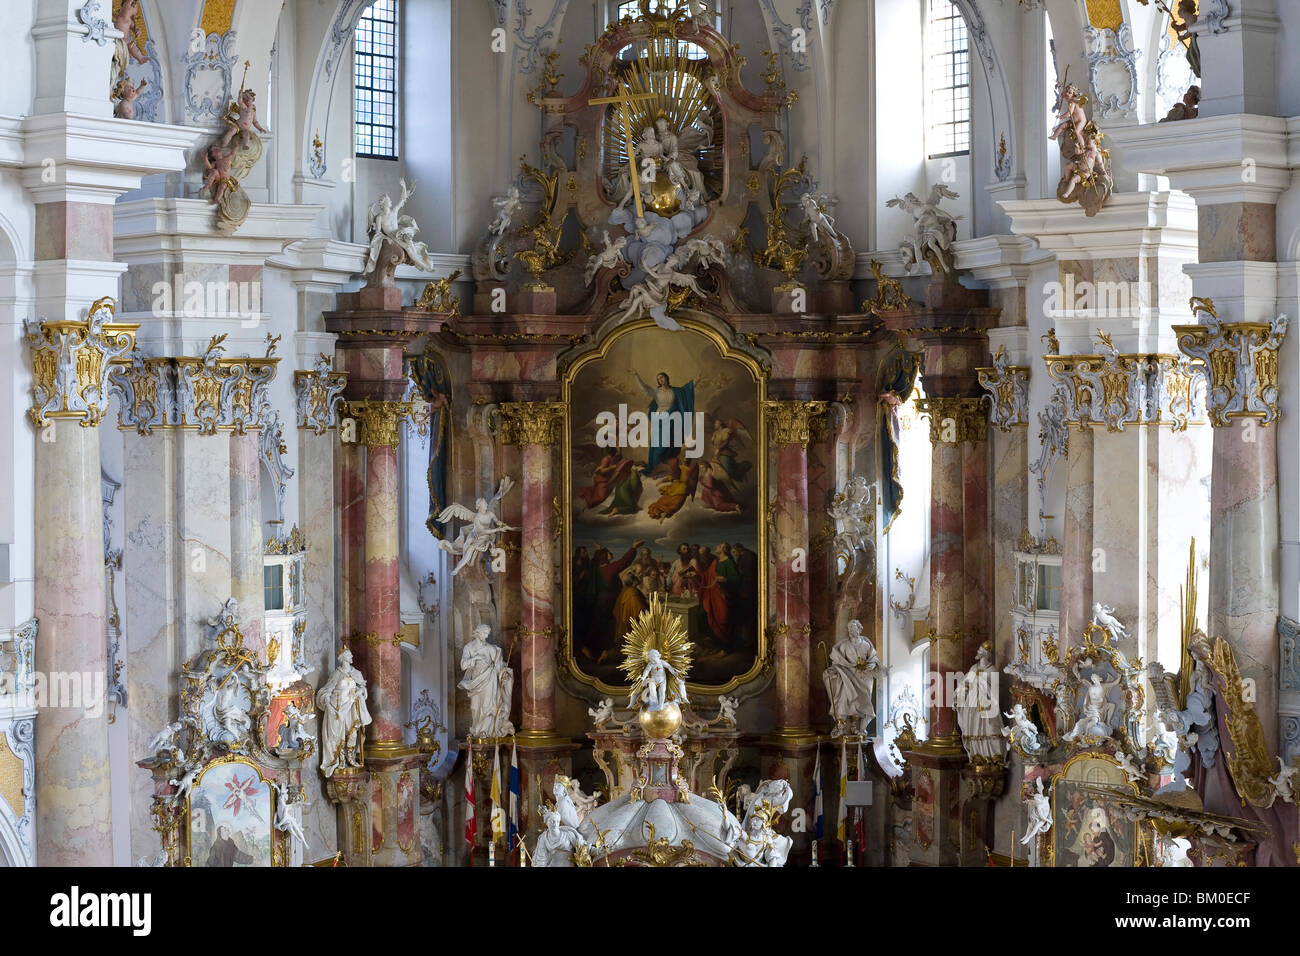 Wallfahrtskirche der vierzehn Heiligen Heiligen, Wallfahrtskirche Vierzehnheiligen bei Bad Staffelstein, Oberfranken, Bayern, Ge Stockfoto